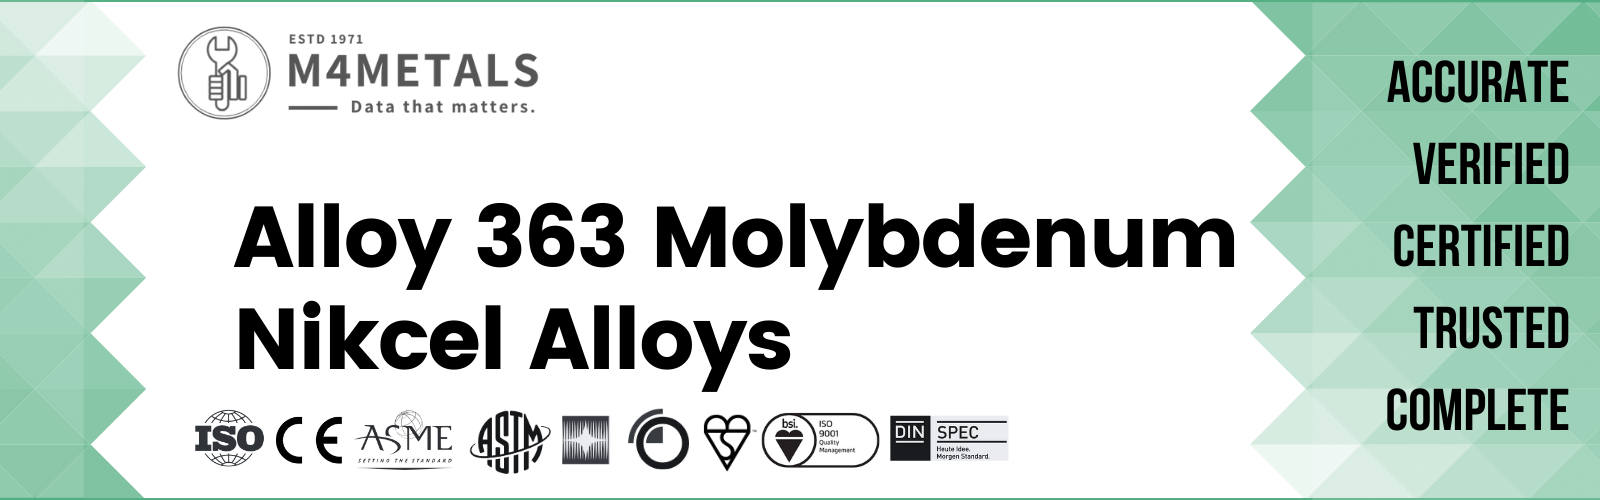 Molybdenum Alloy 363